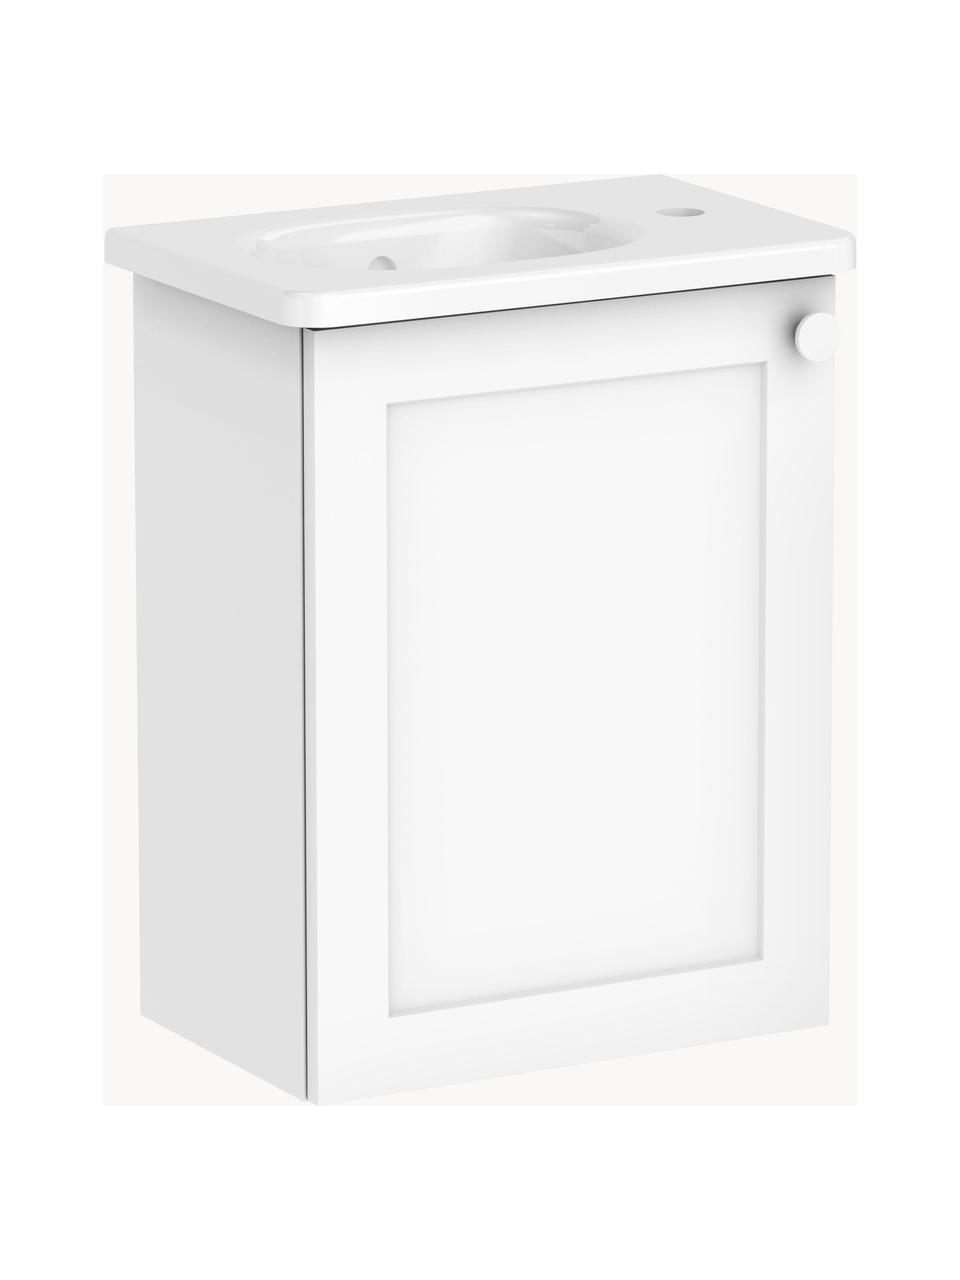 Szafka łazienkowa z umywalką Rafaella, S 45 cm, Biały, S 45 x W 58 cm